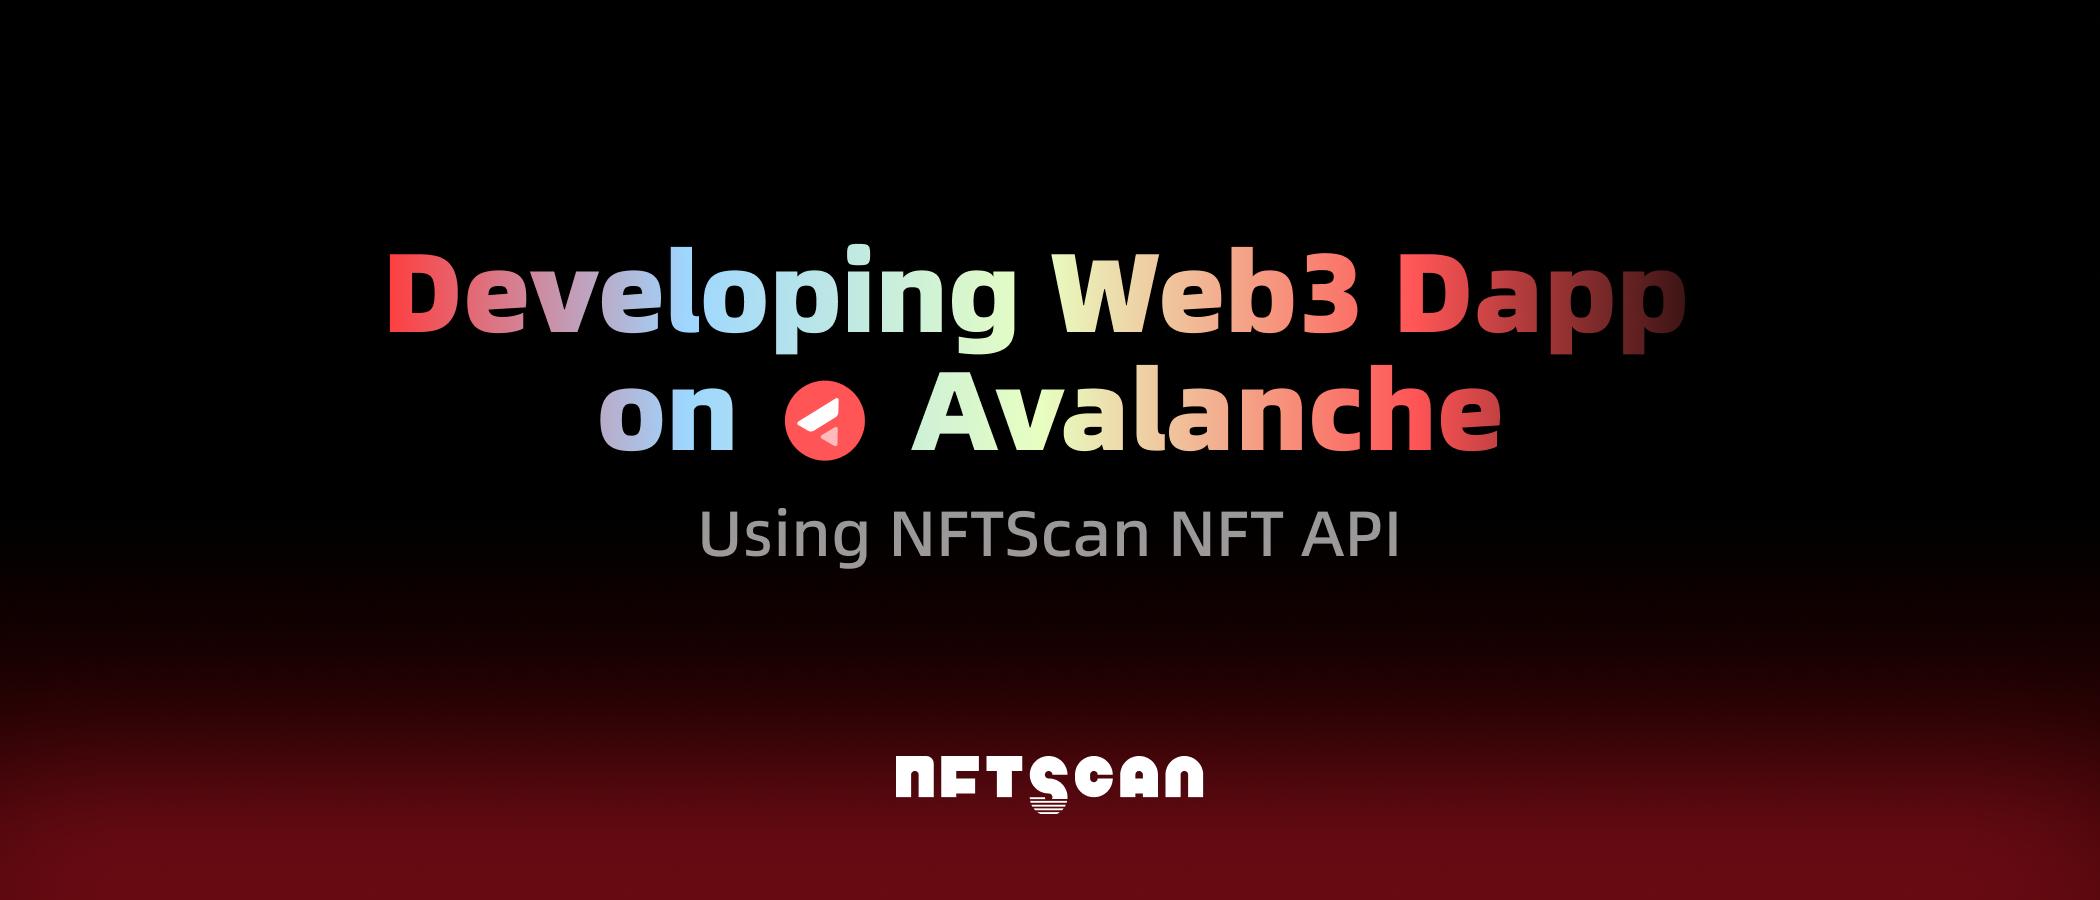 如何使用 NFTScan NFT API 在 Avalanche 网络上开发 Web3 应用